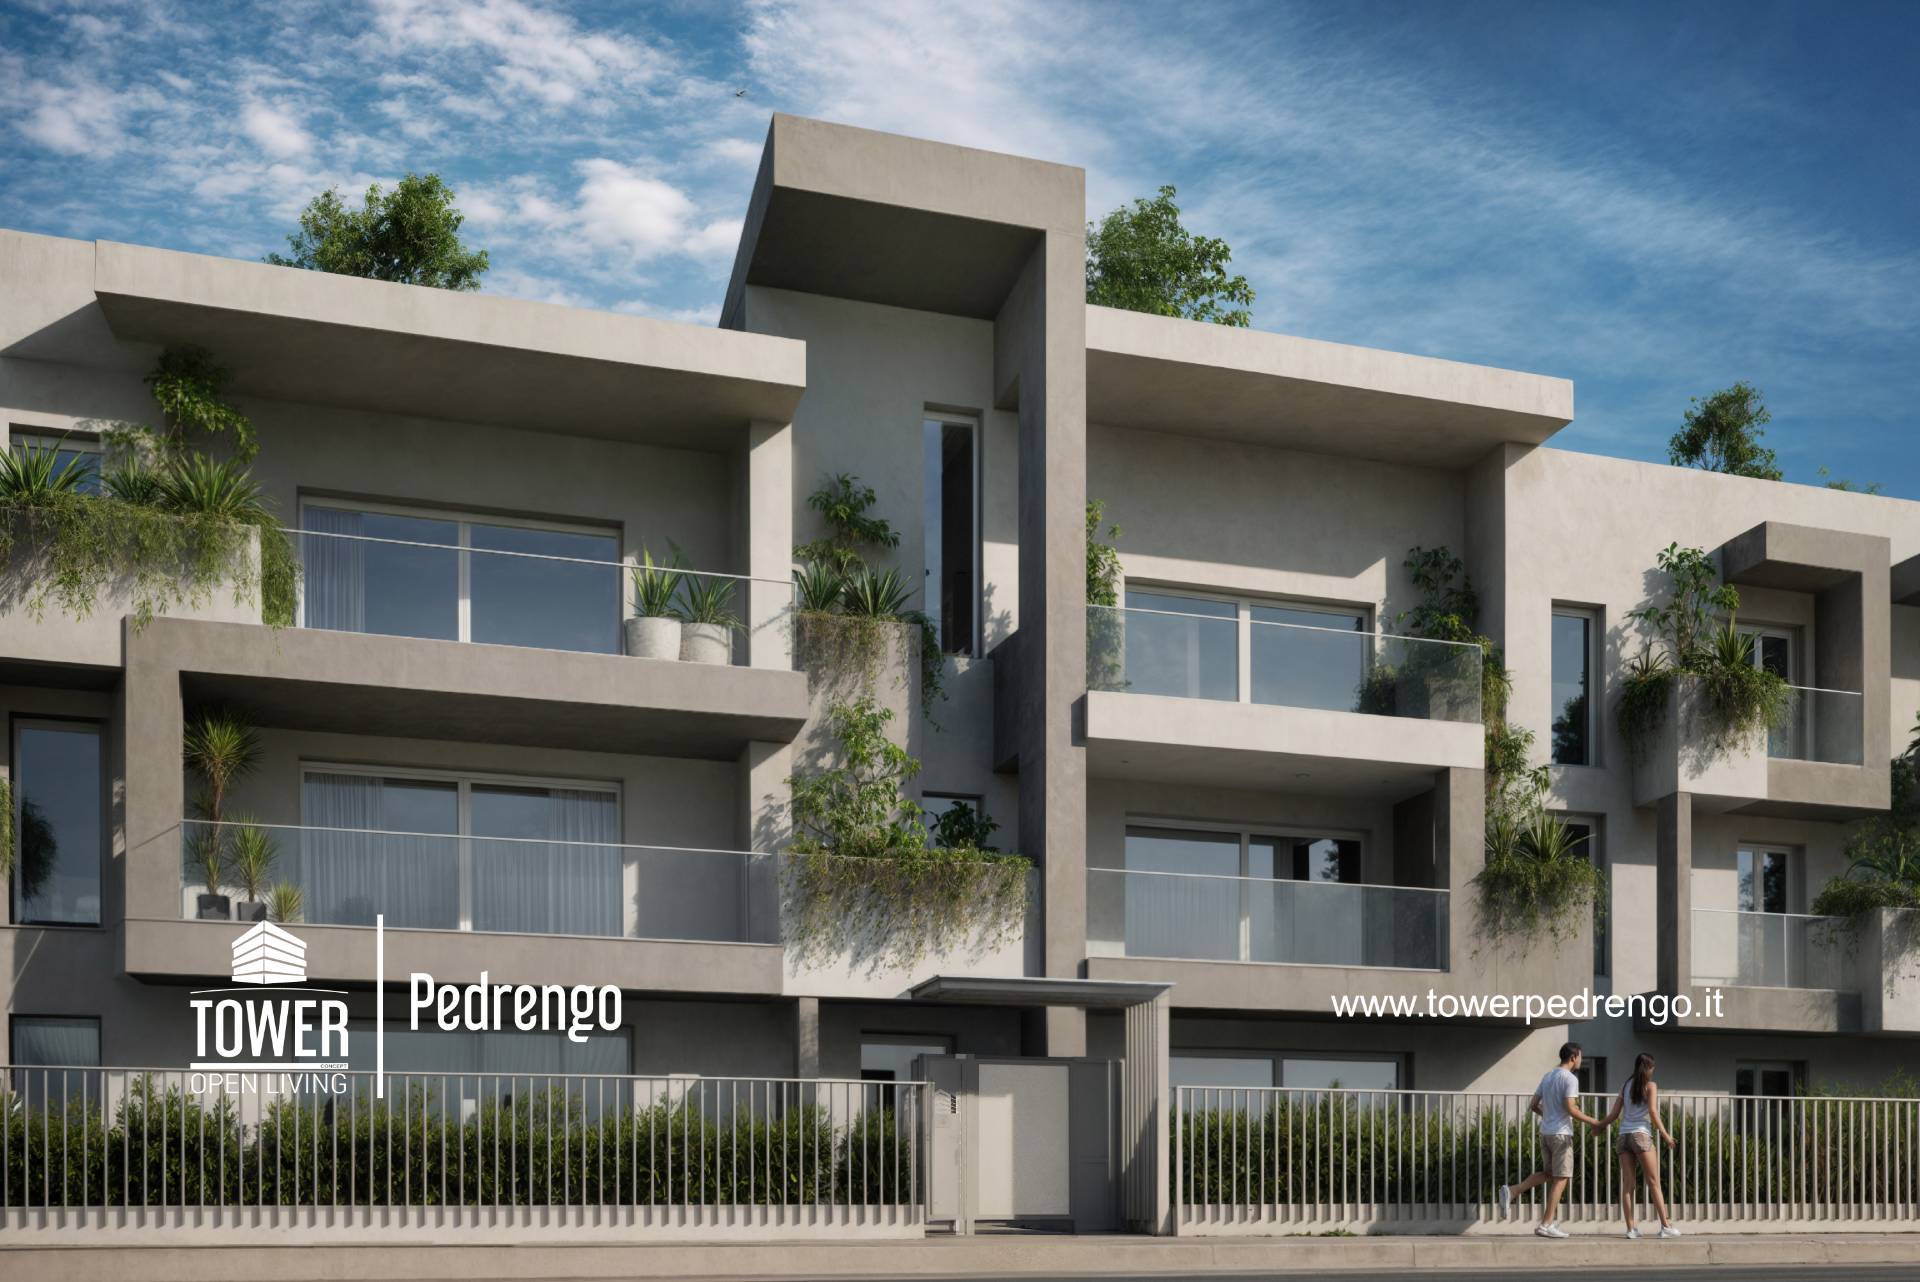 Appartamento in vendita a Pedrengo, 4 locali, prezzo € 369.000 | PortaleAgenzieImmobiliari.it